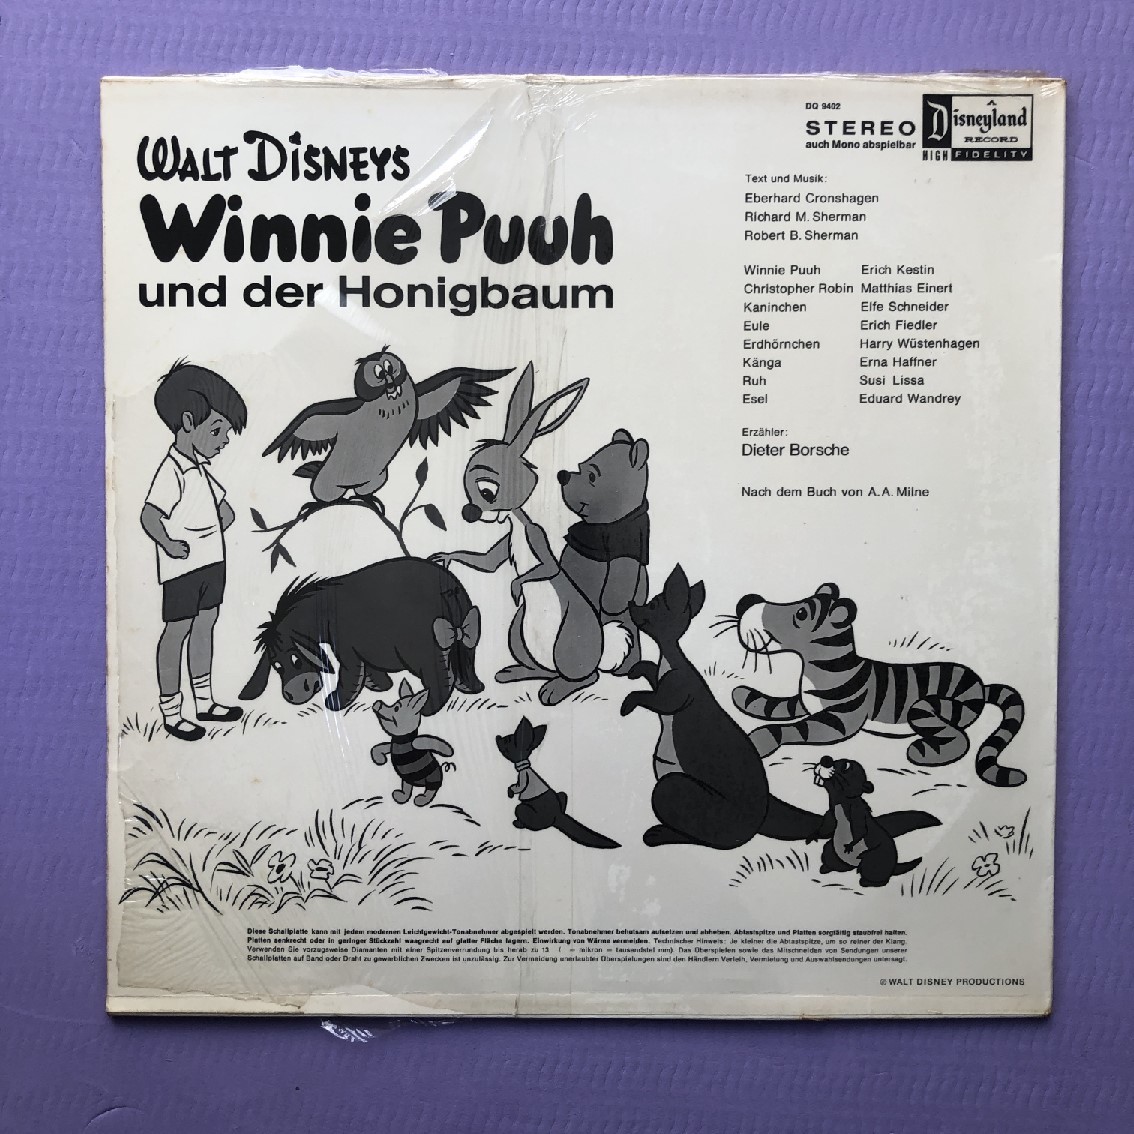  хорошо запись очень редкий woruto* Disney Walt Disney LP запись Walt Disneys Winnie Puuh Und Der Honigbaum Германия запись Anime Винни Пух 